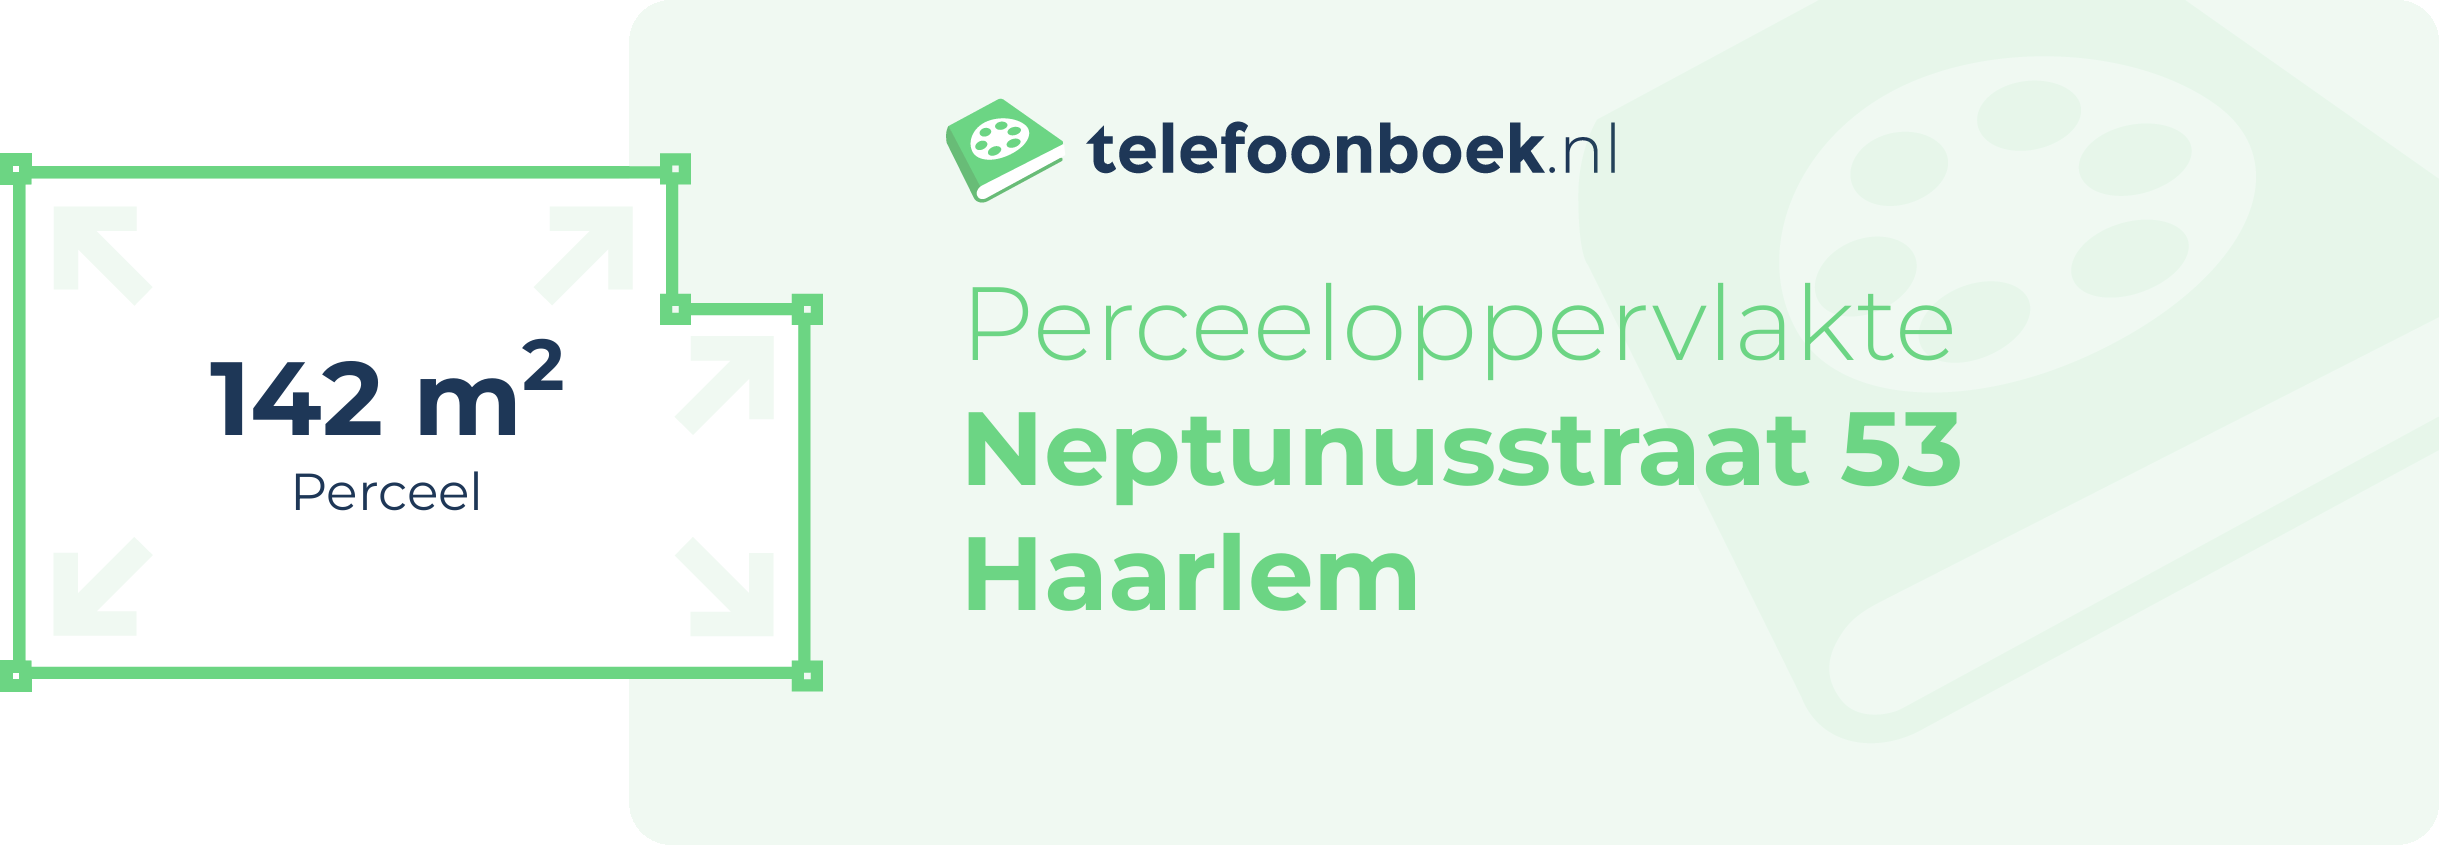 Perceeloppervlakte Neptunusstraat 53 Haarlem